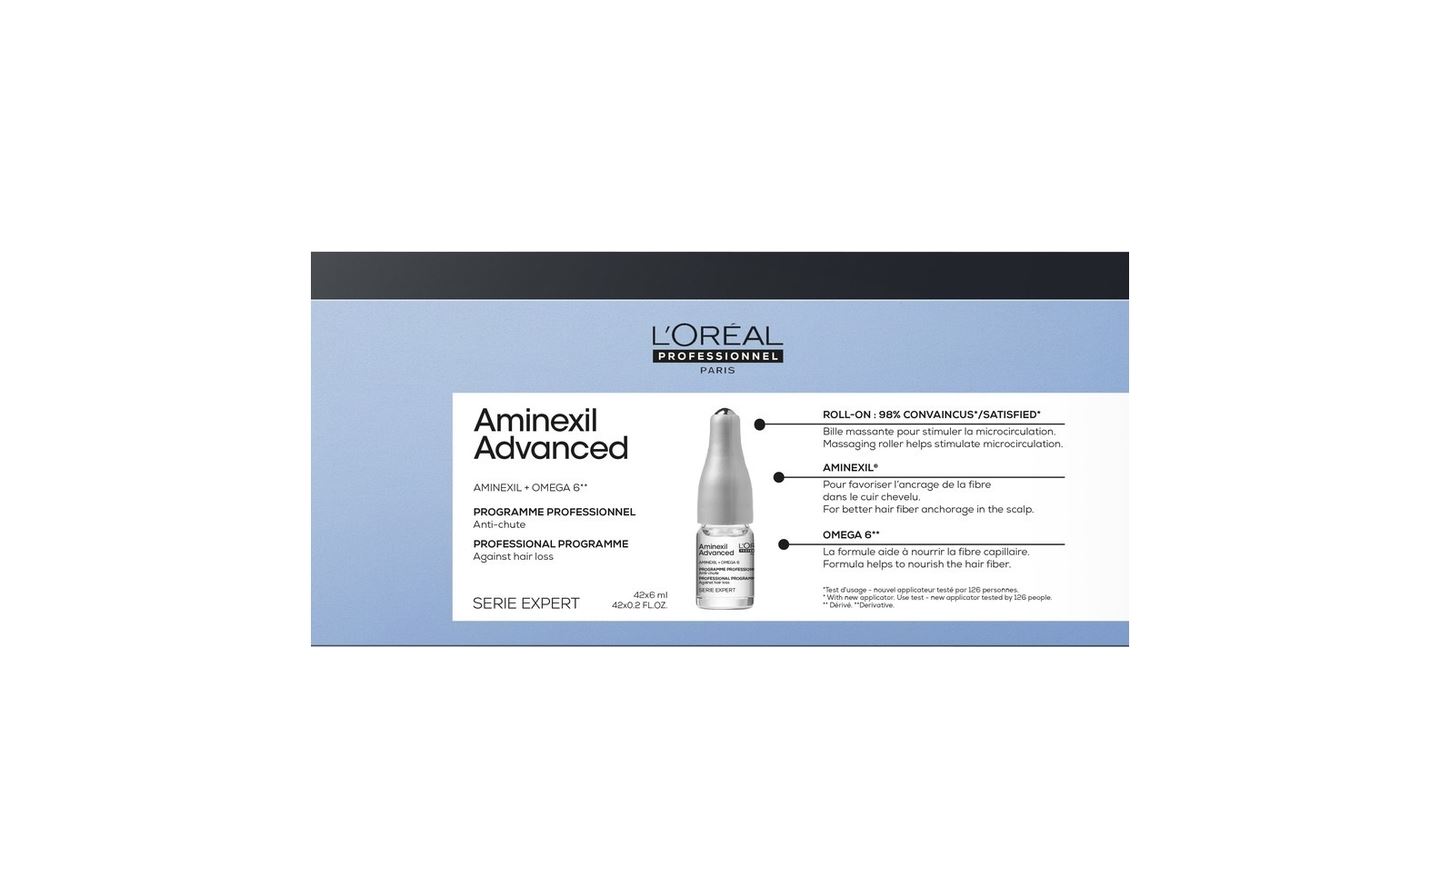 Набор L'Oreal Professionnel концентрат Aminexil Advanced в ампулах против выпадения во ампулы для волос l oreal paris aminexil advanced против выпадения волос 10х6 мл